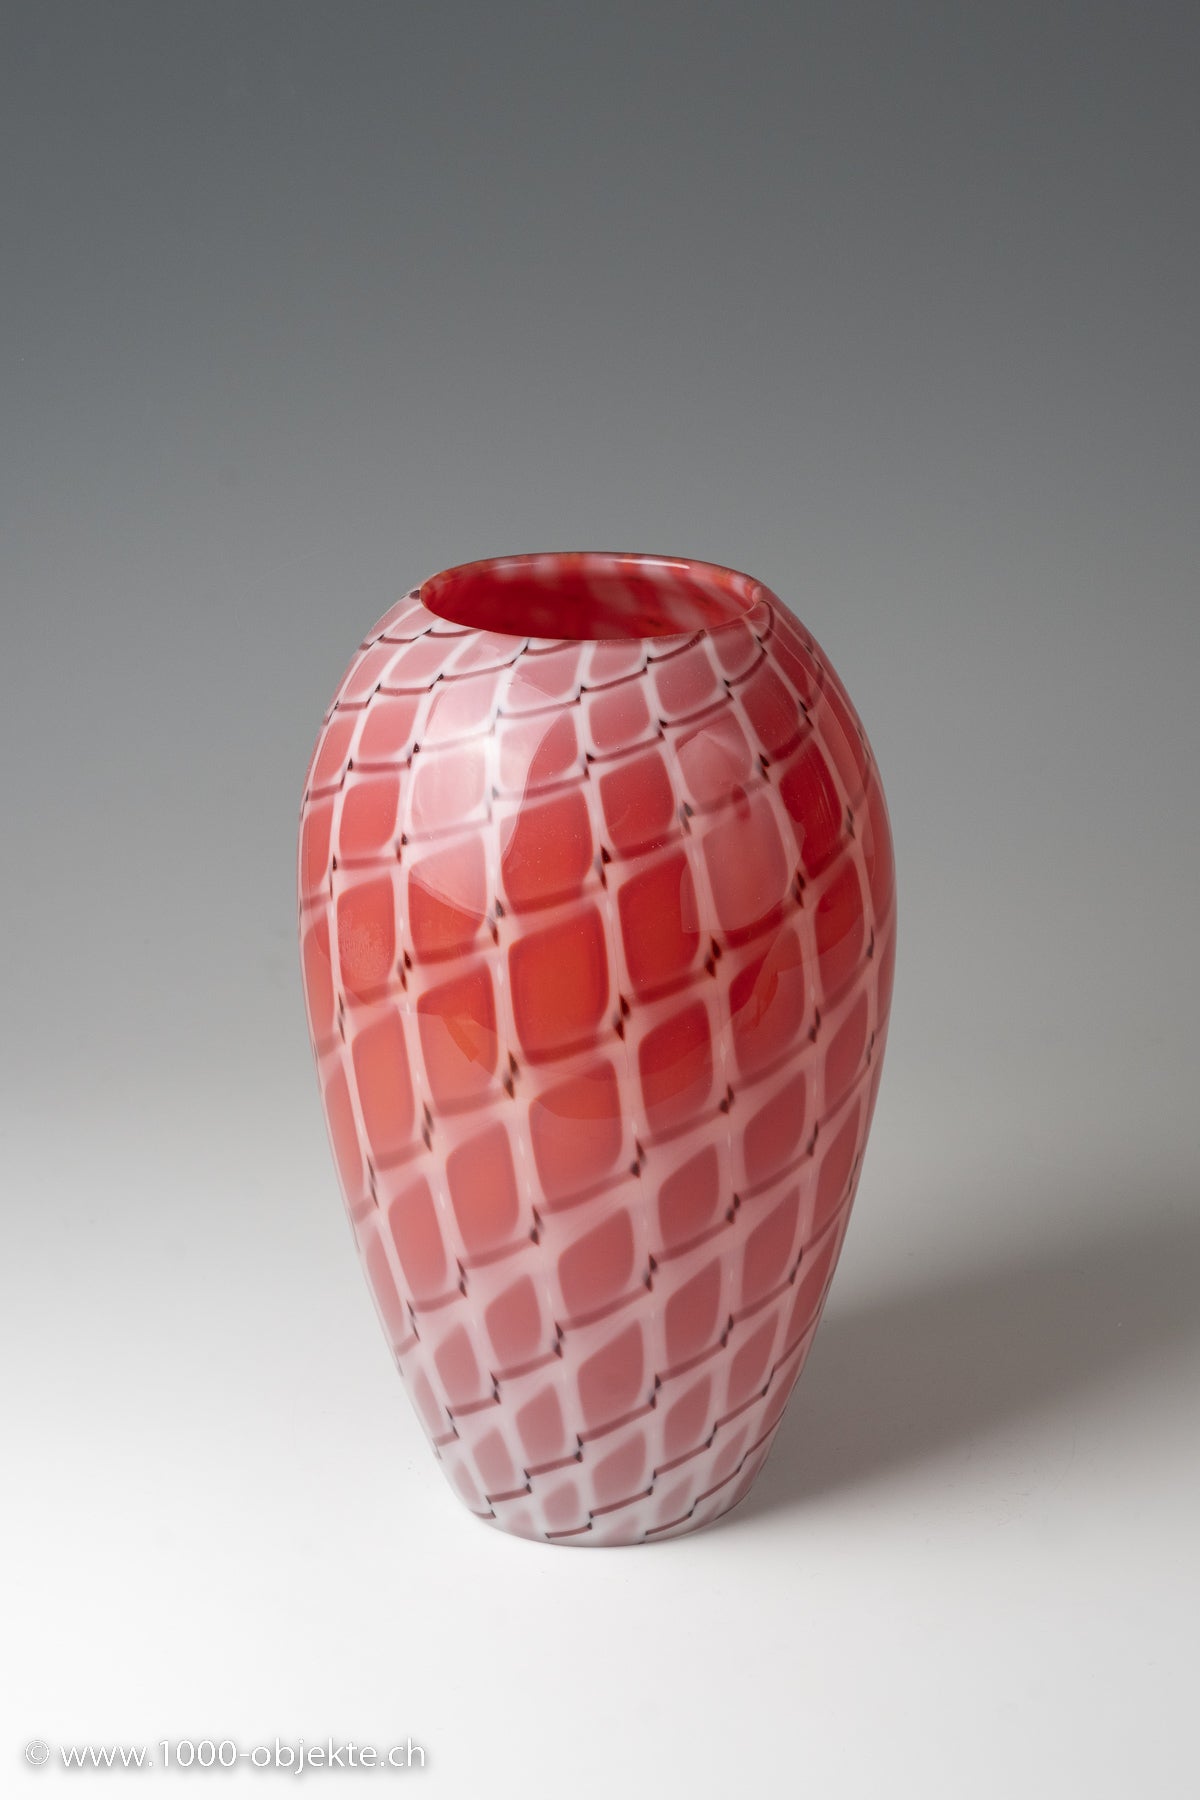 Vase ''A losanghe'' Archimede Seguso, Murano, ca. 1952